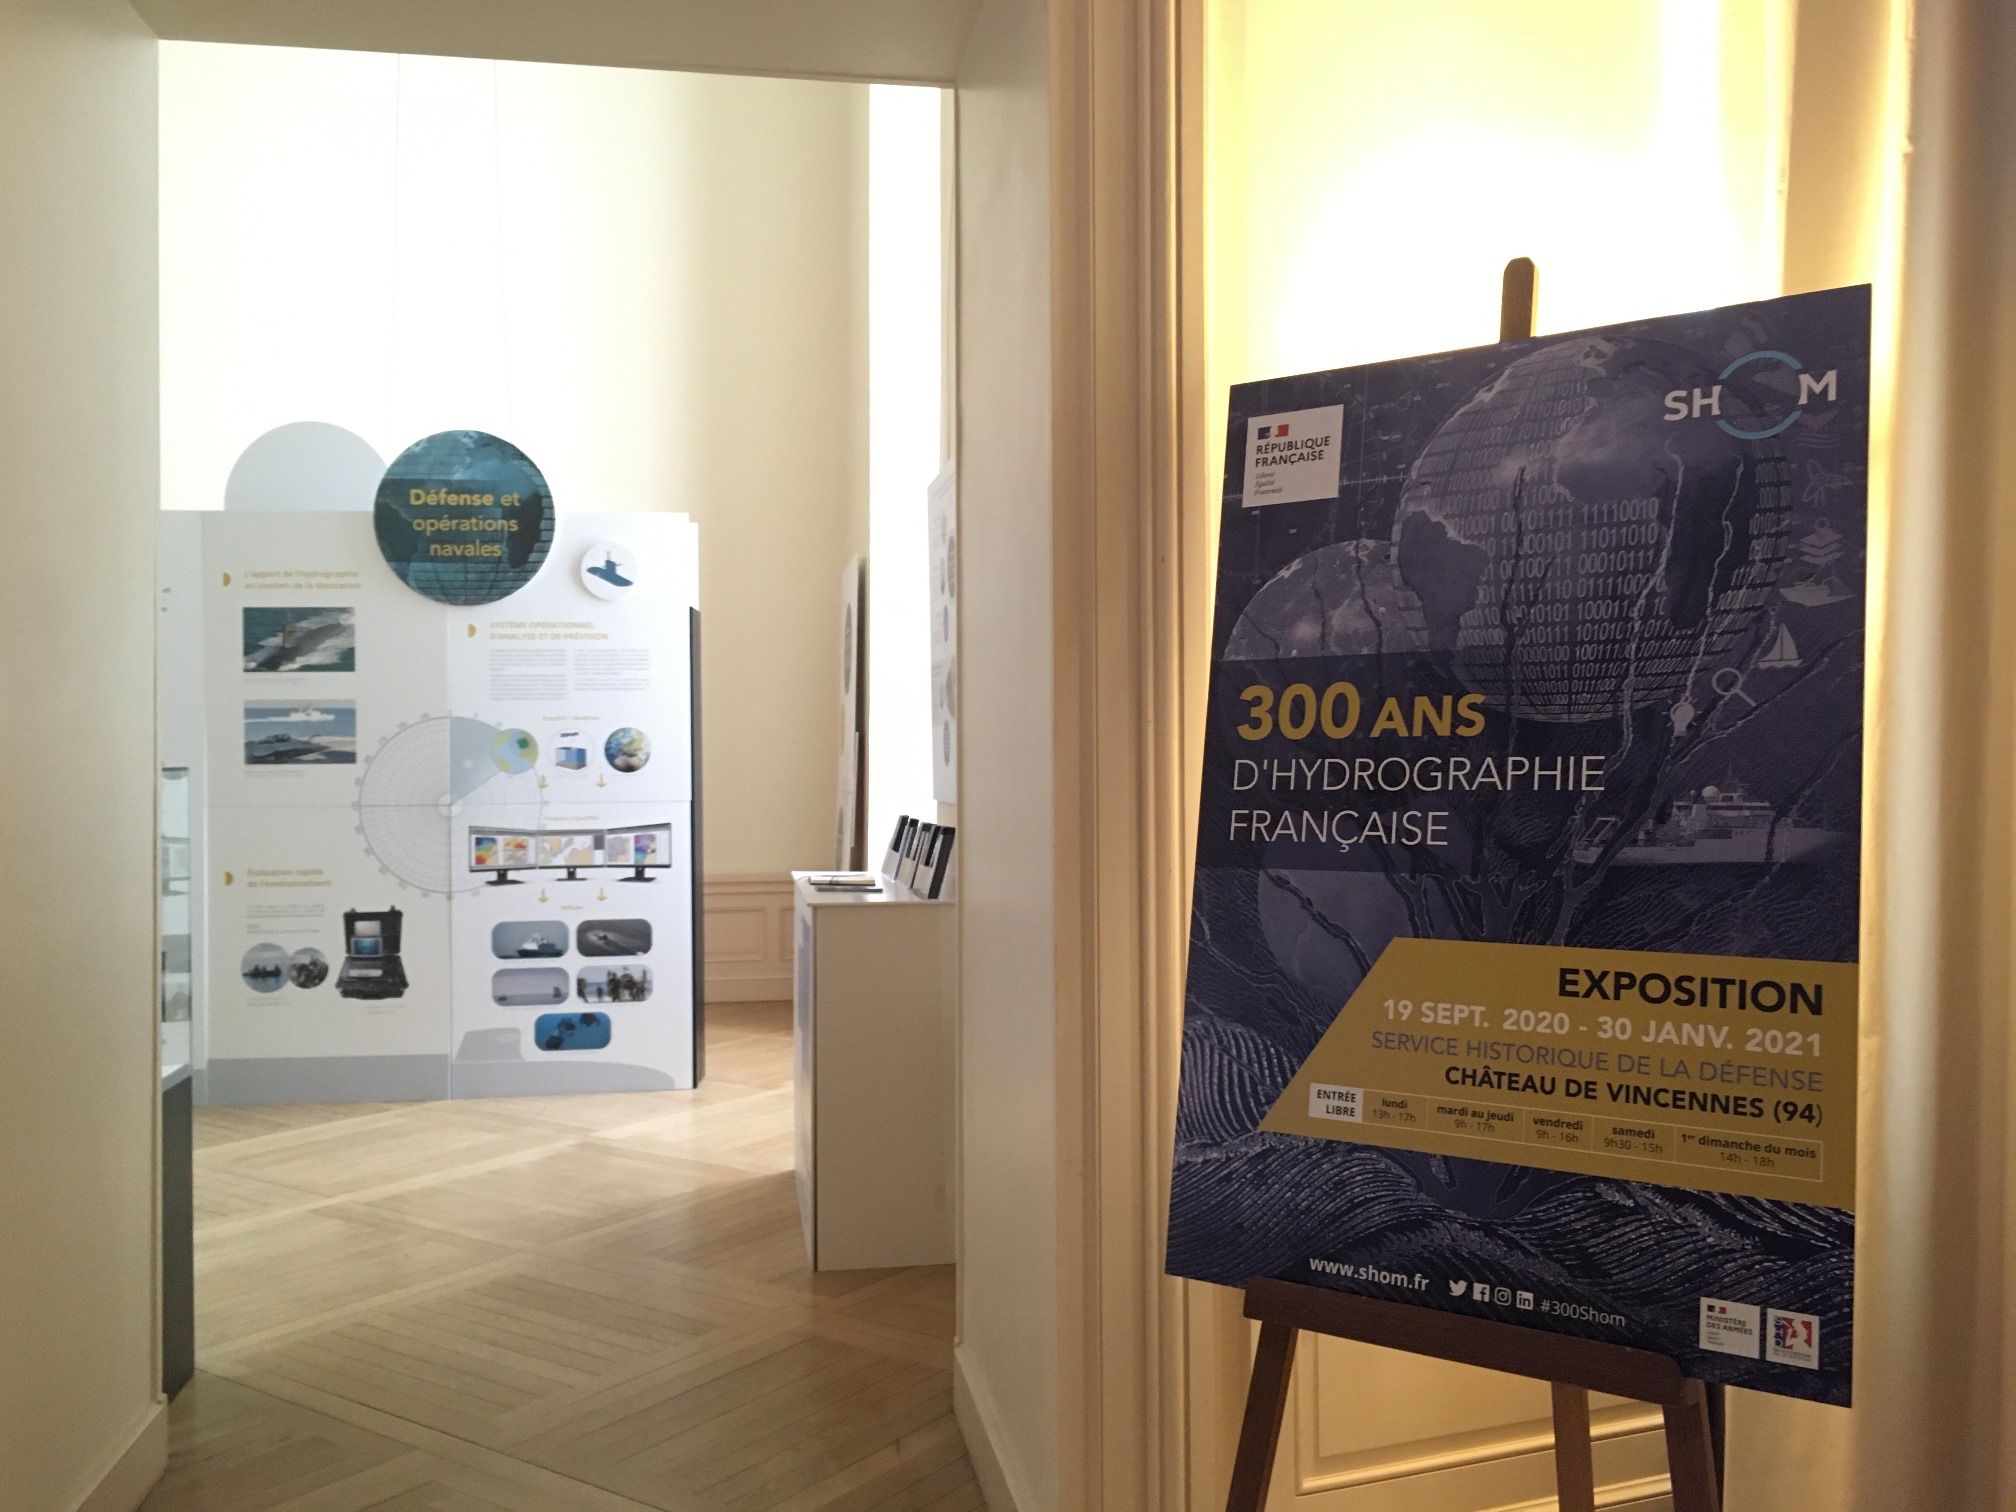 Accès à l'exposition "300 ans d'hydrographie française" au Shd Vincennes